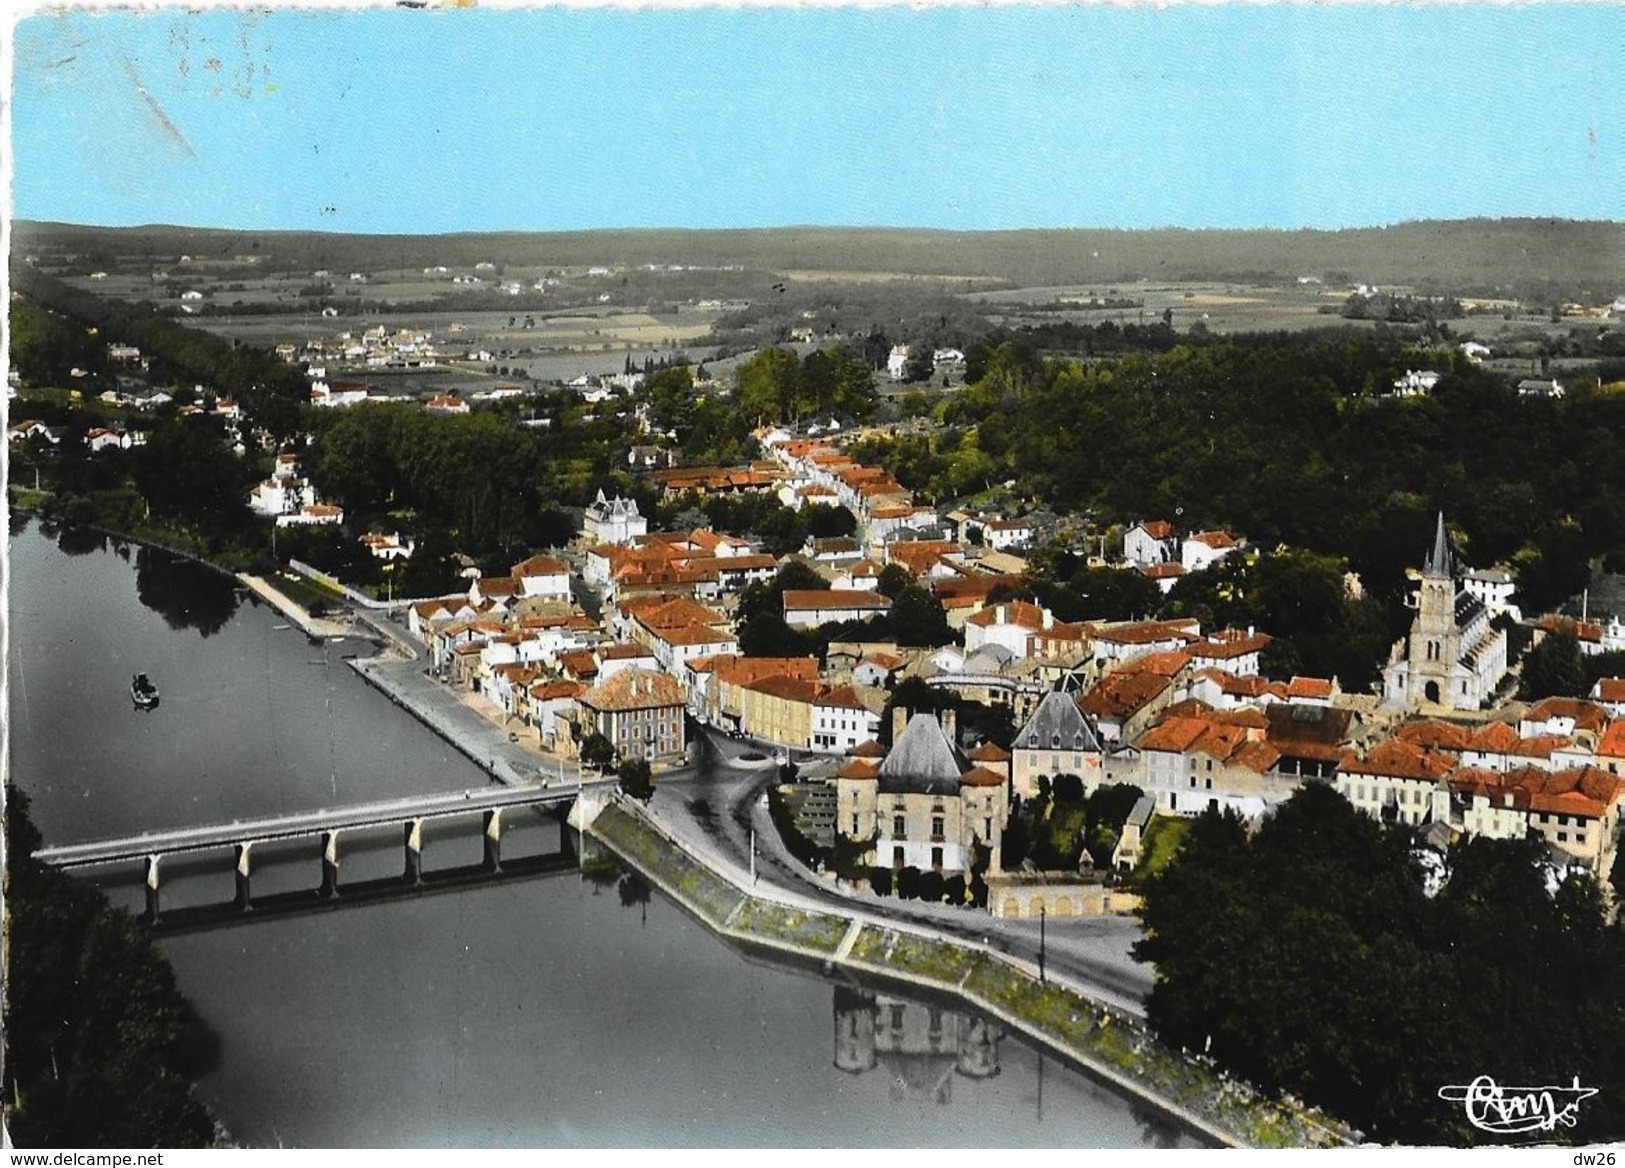 Peyrehorade (Landes) - Vue Panoramique Aérienne: L'Eglise, Le Château D'Ortie, Le Pont Sur Les Gaves - Edition Combier - Peyrehorade